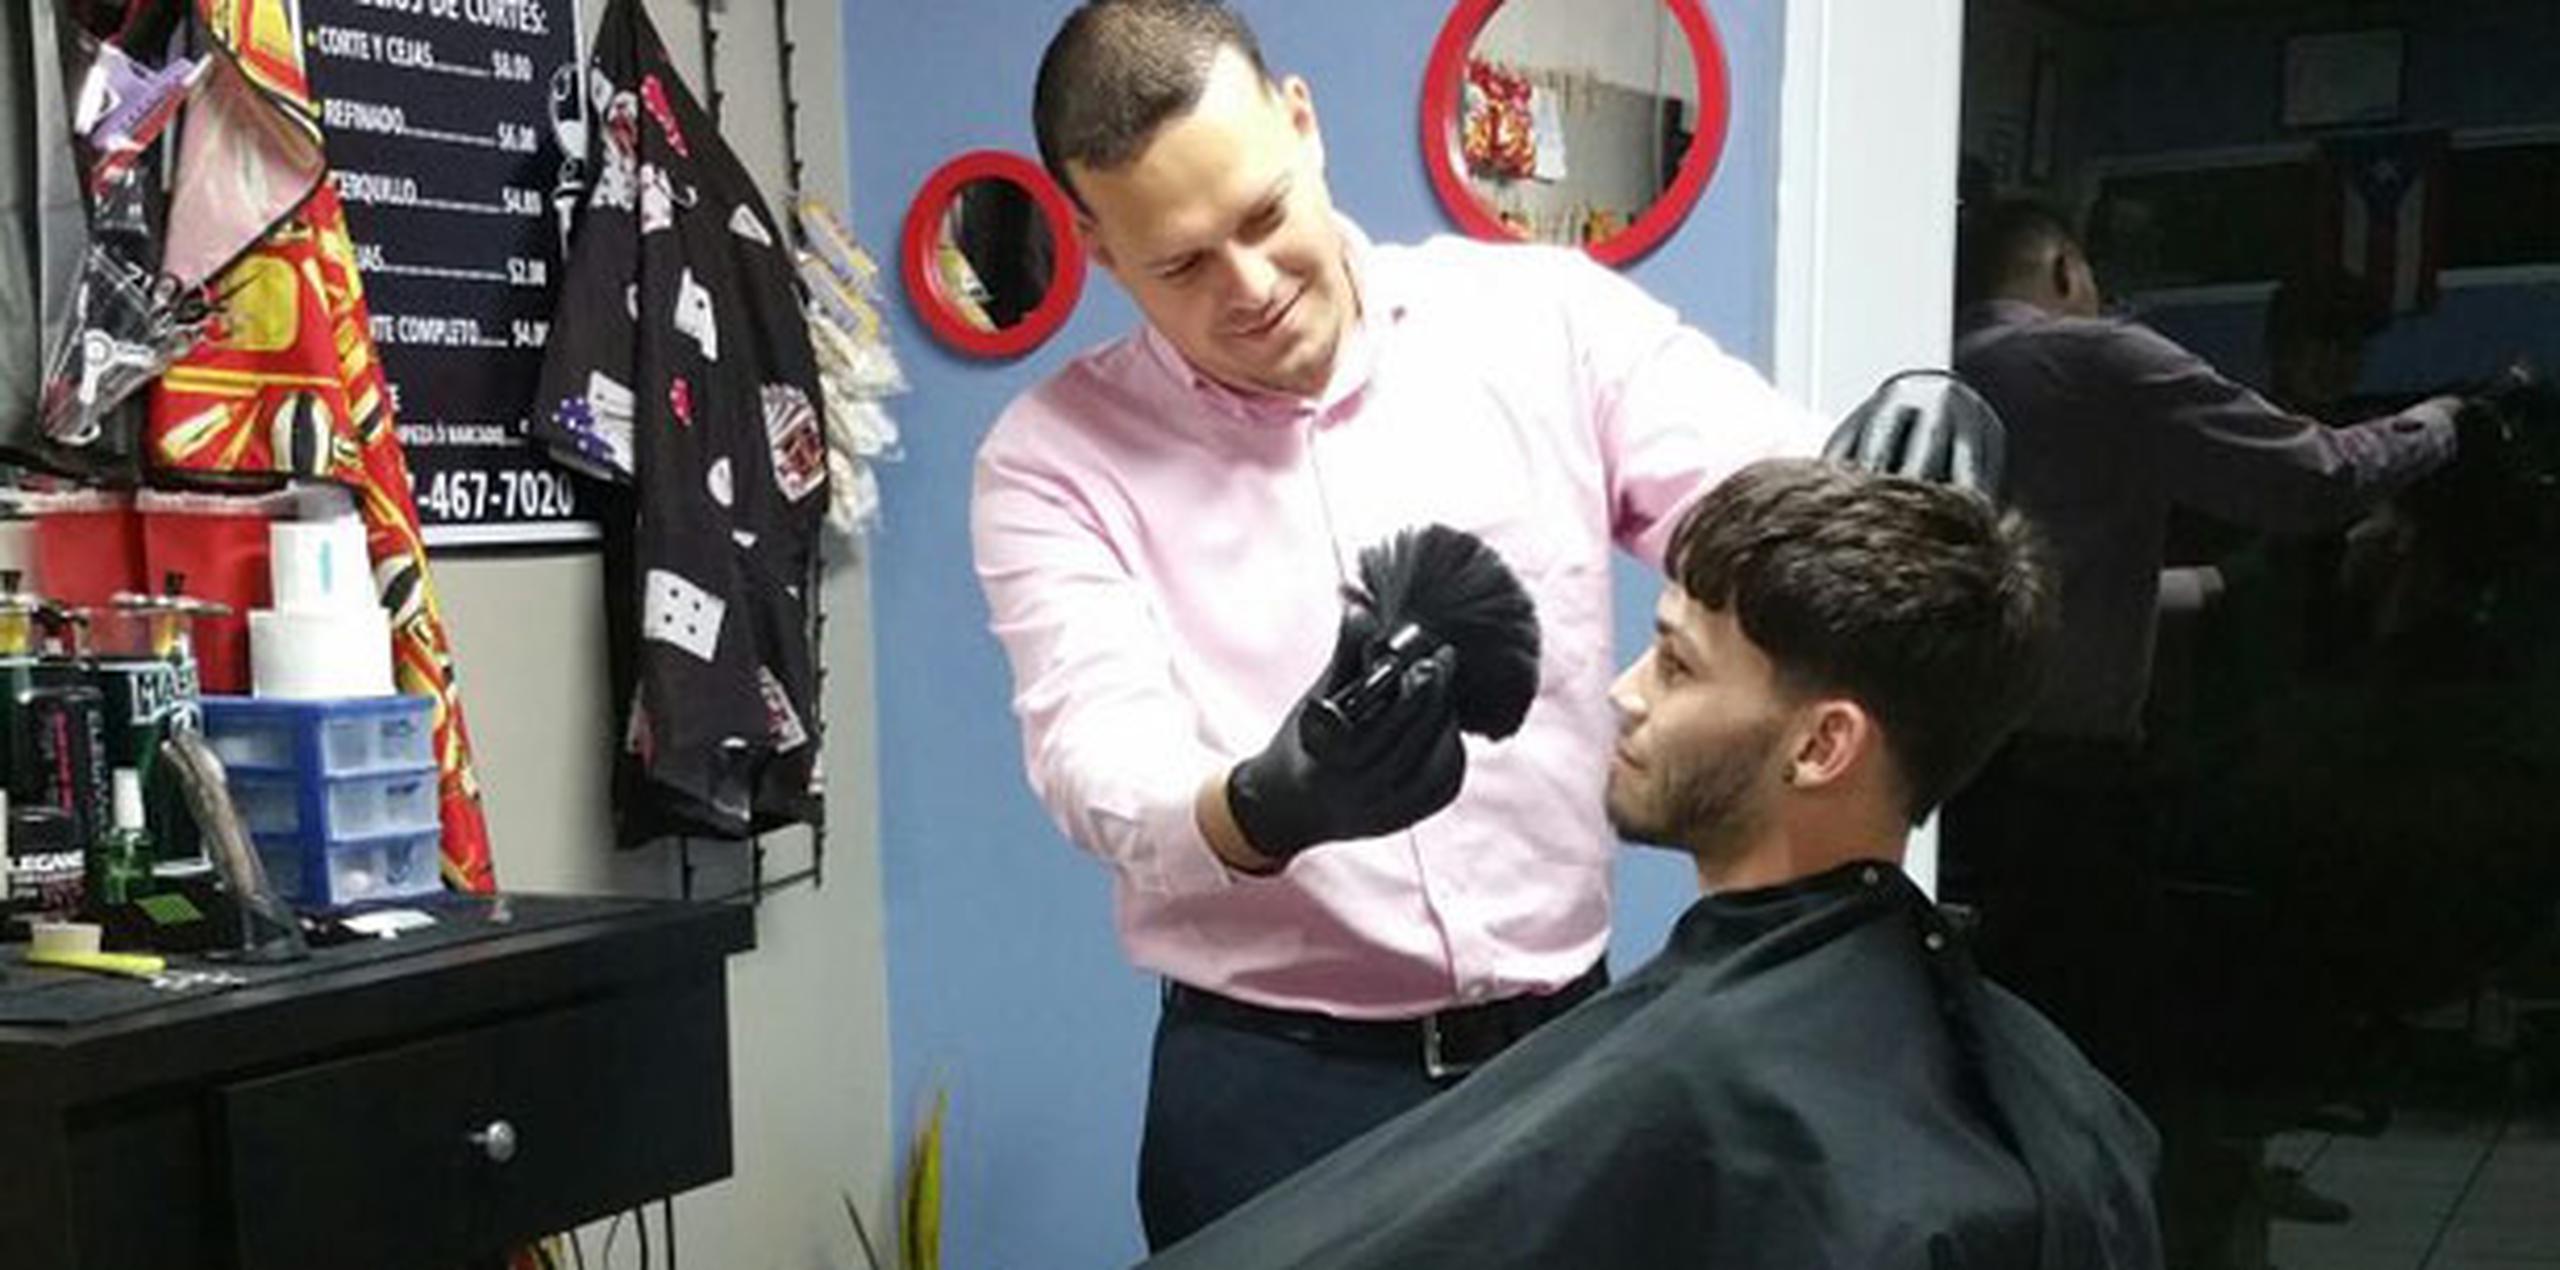 Alexis Padilla, quien hoy es barbero, abandonó la escuela para ayudar a su familia a lograr su sostén diario. Más tarde completaría su cuarto año y realizaría sus estudios en barbería. (Suministrada)